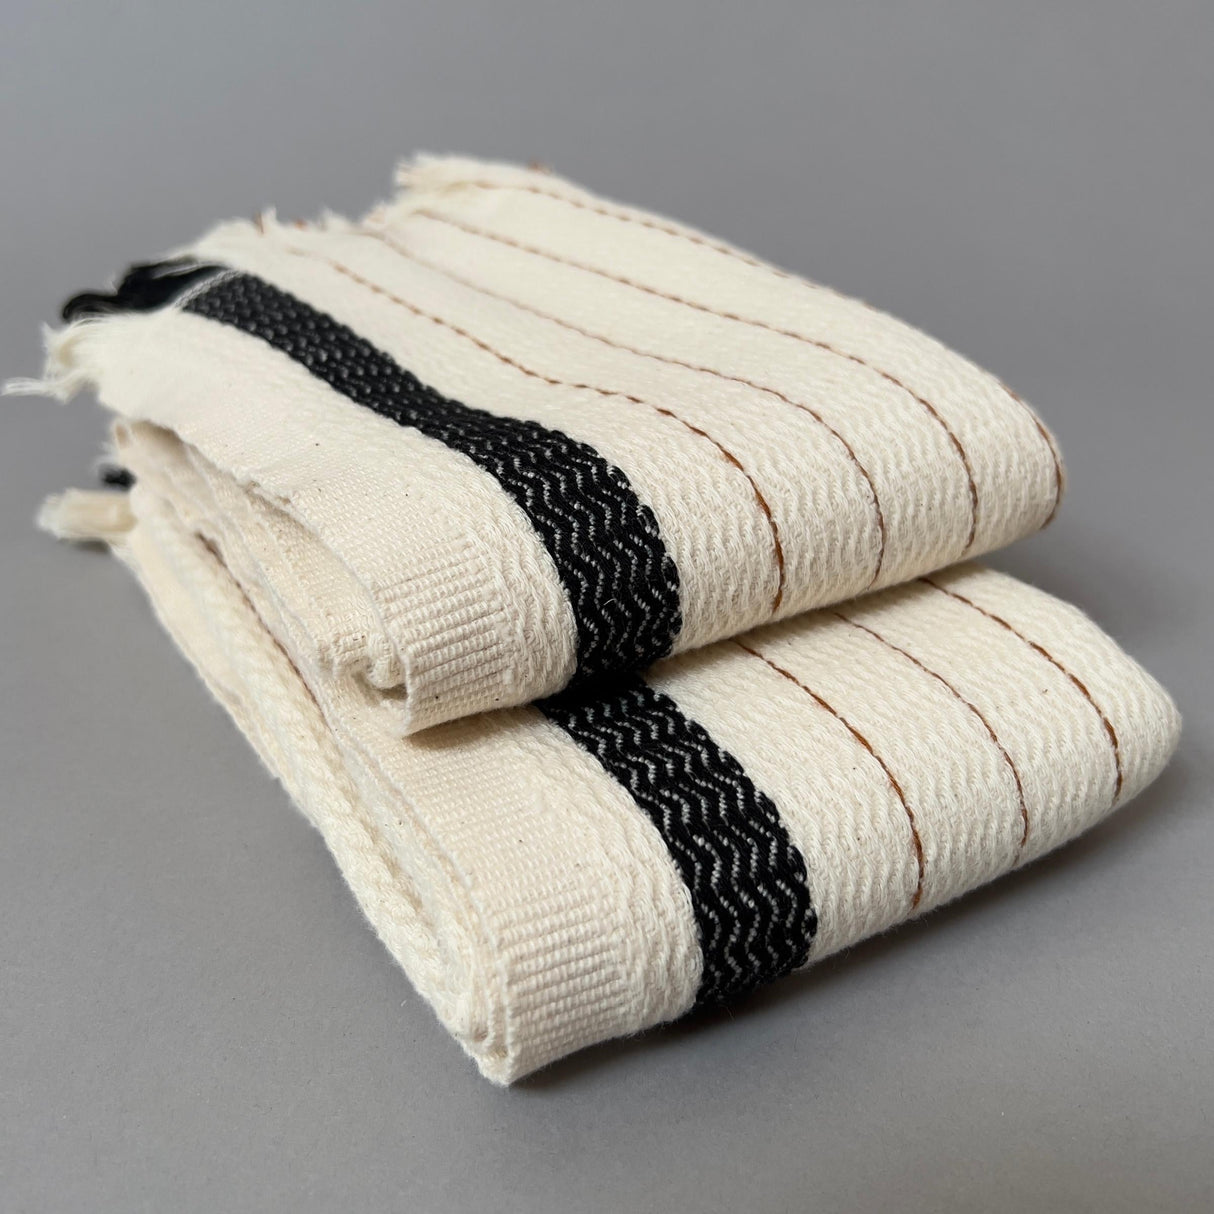  Kitchen Towels Dishcloths 100% Cotton, Set of 8, Dark